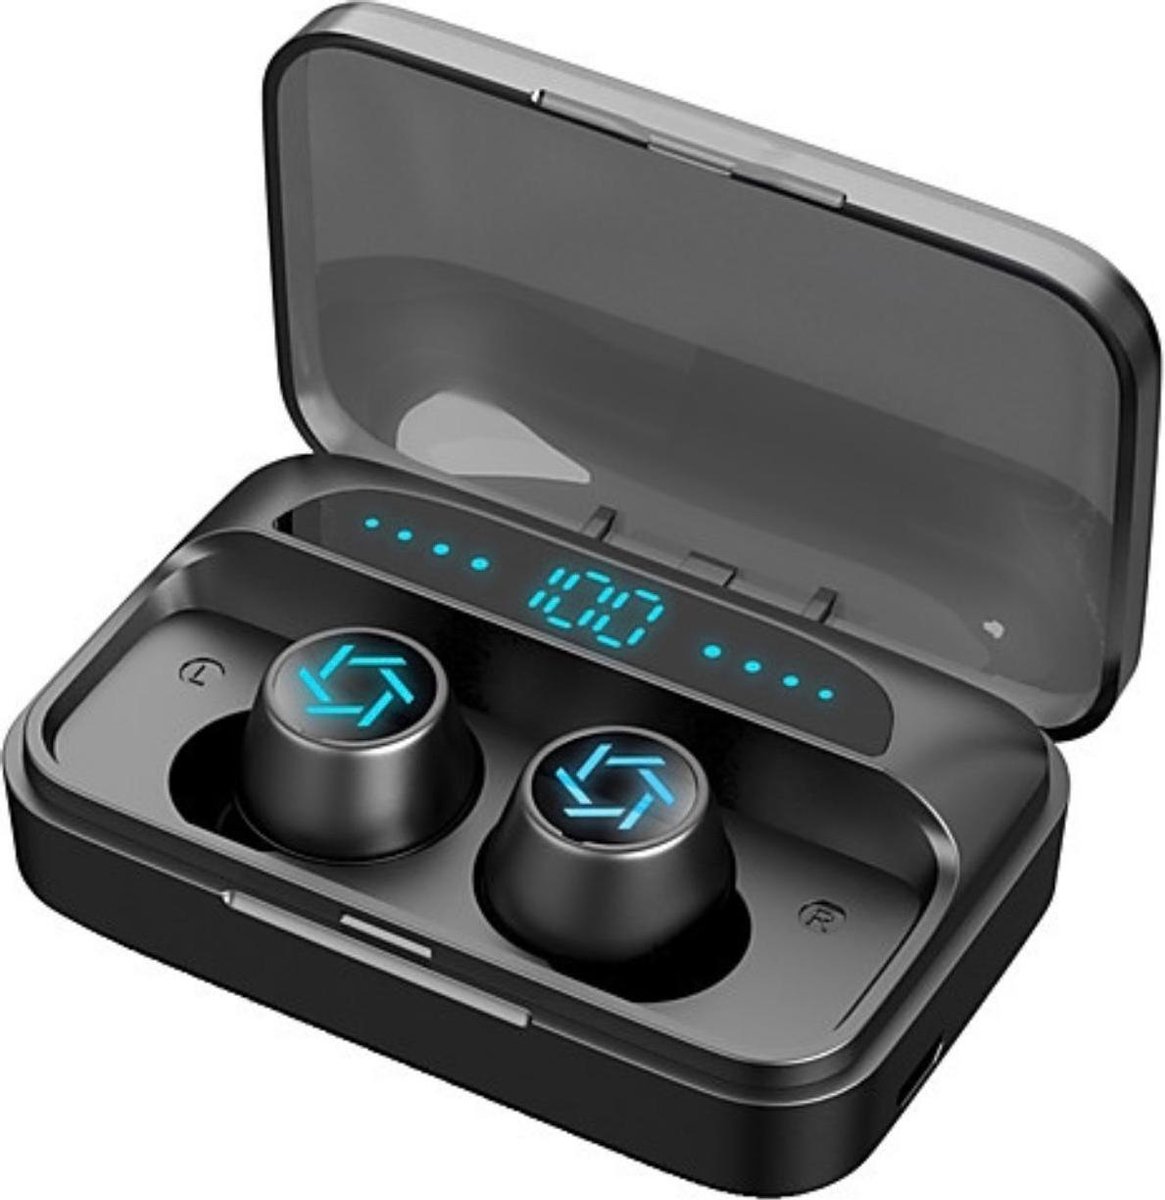 TWS - Draadloze oortjes / in-ear oordopjes - Bluetooth Draadloze buds - Luxe indicator - Geschikt voor alle smartphones o.a Samsung & Iphone, , galaxy buds, huawei, sony - Zwart.